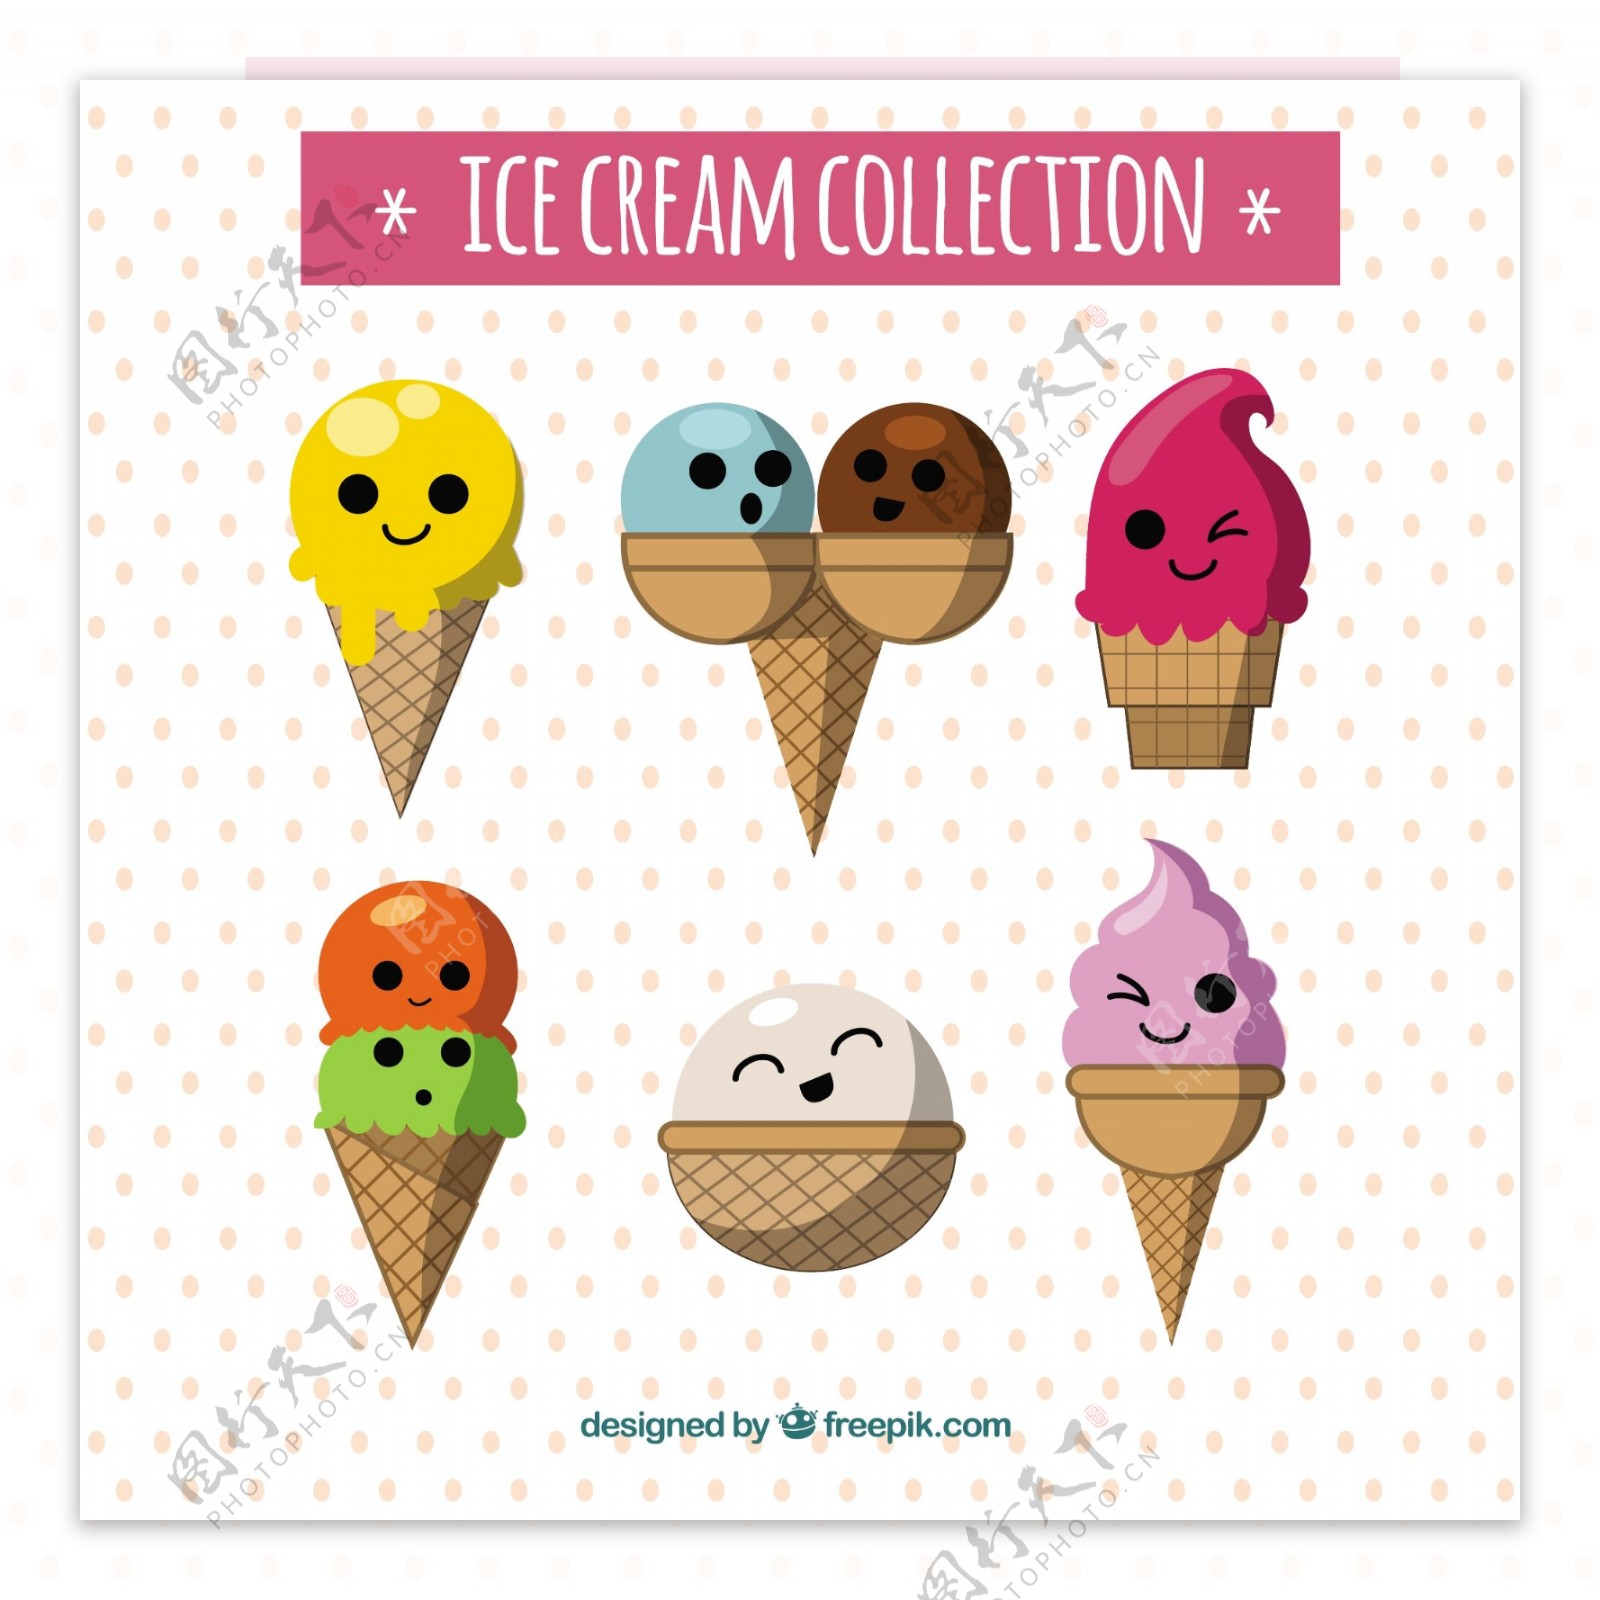 梦幻般的六个冰淇淋人物表情图标矢量素材